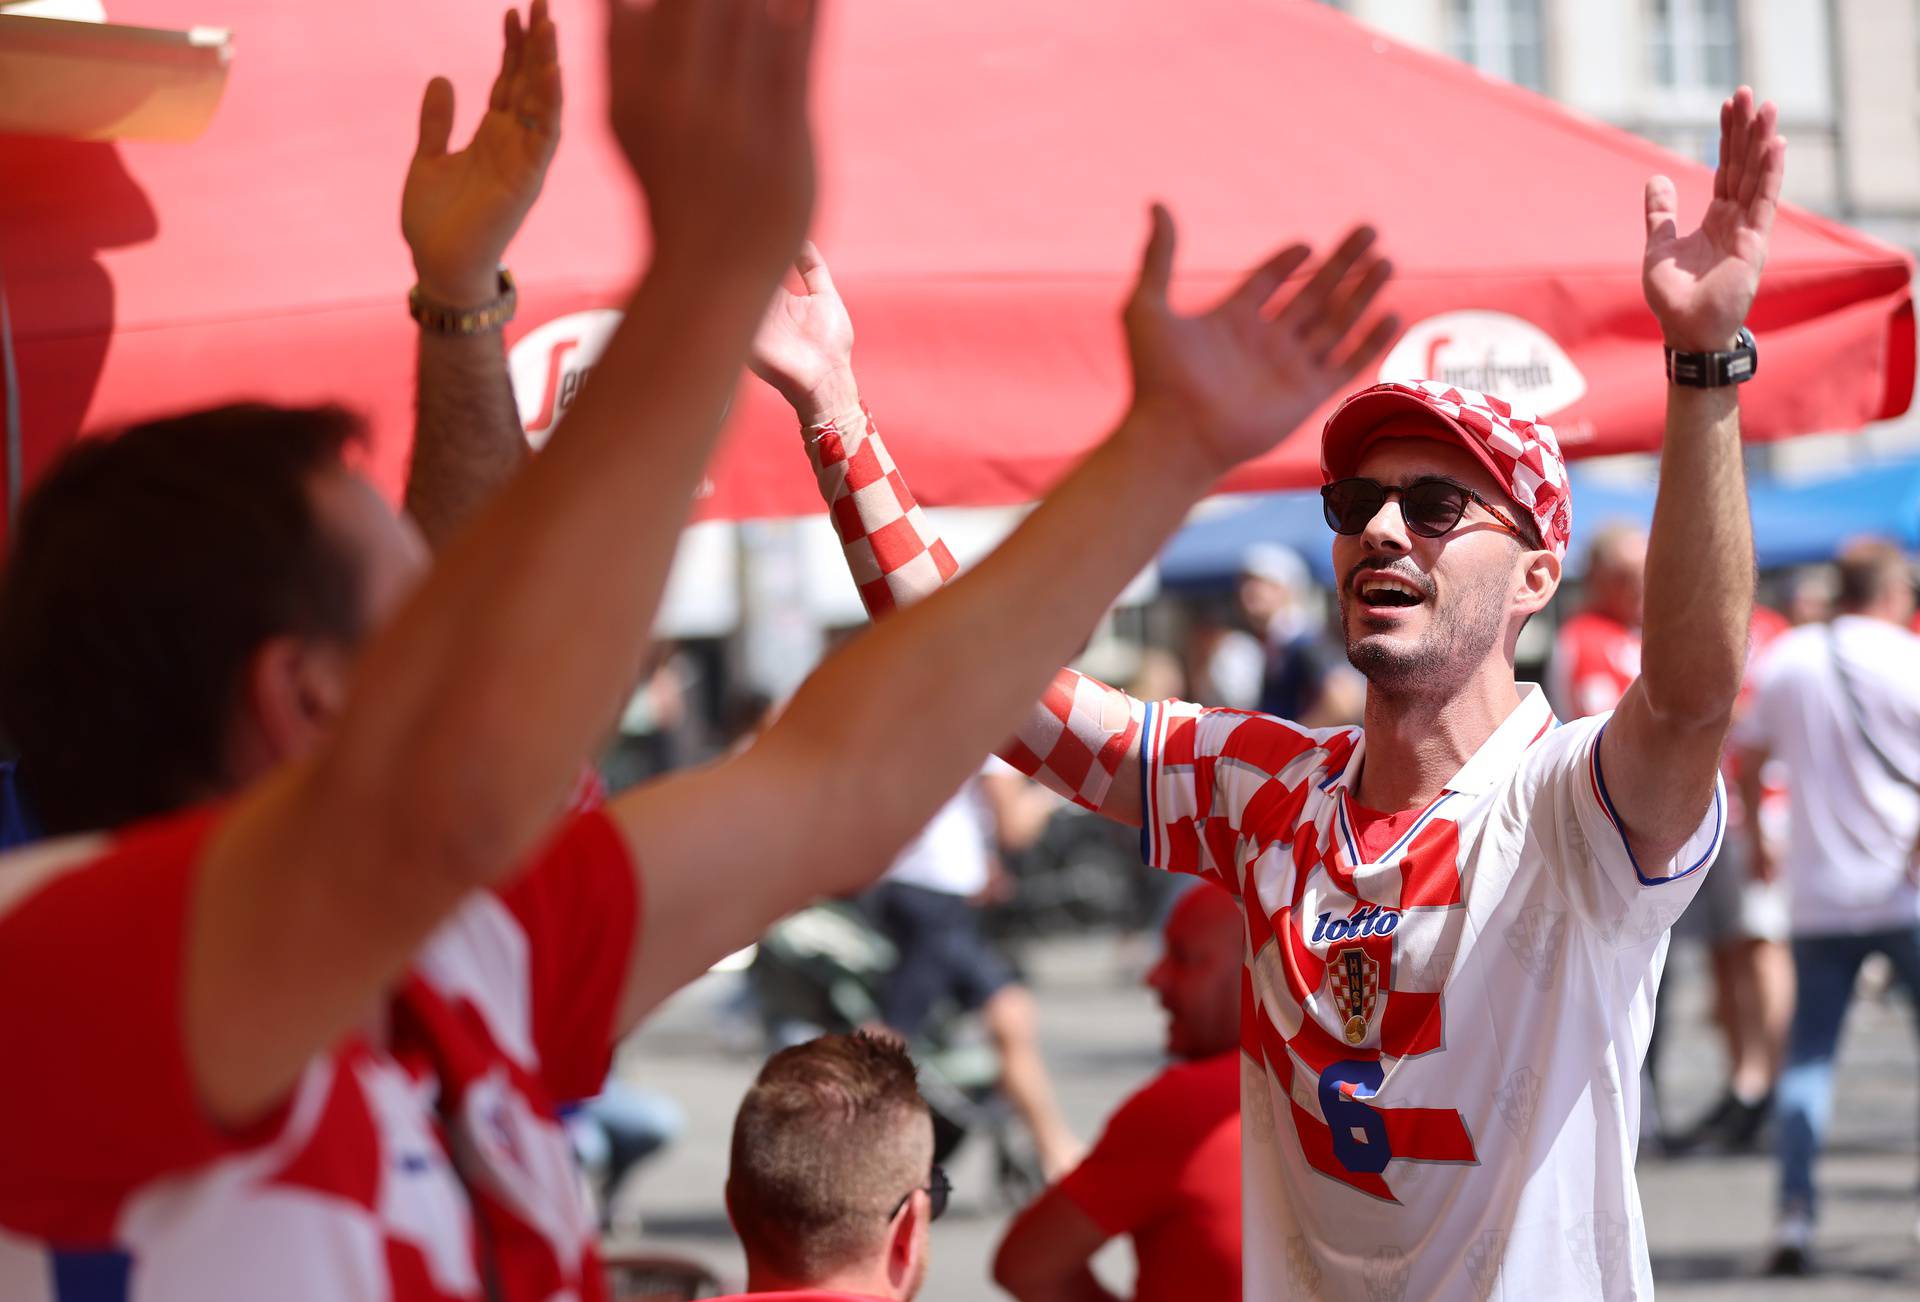 Leipzig: Hrvatski navijači zapjevali uz harmoniku